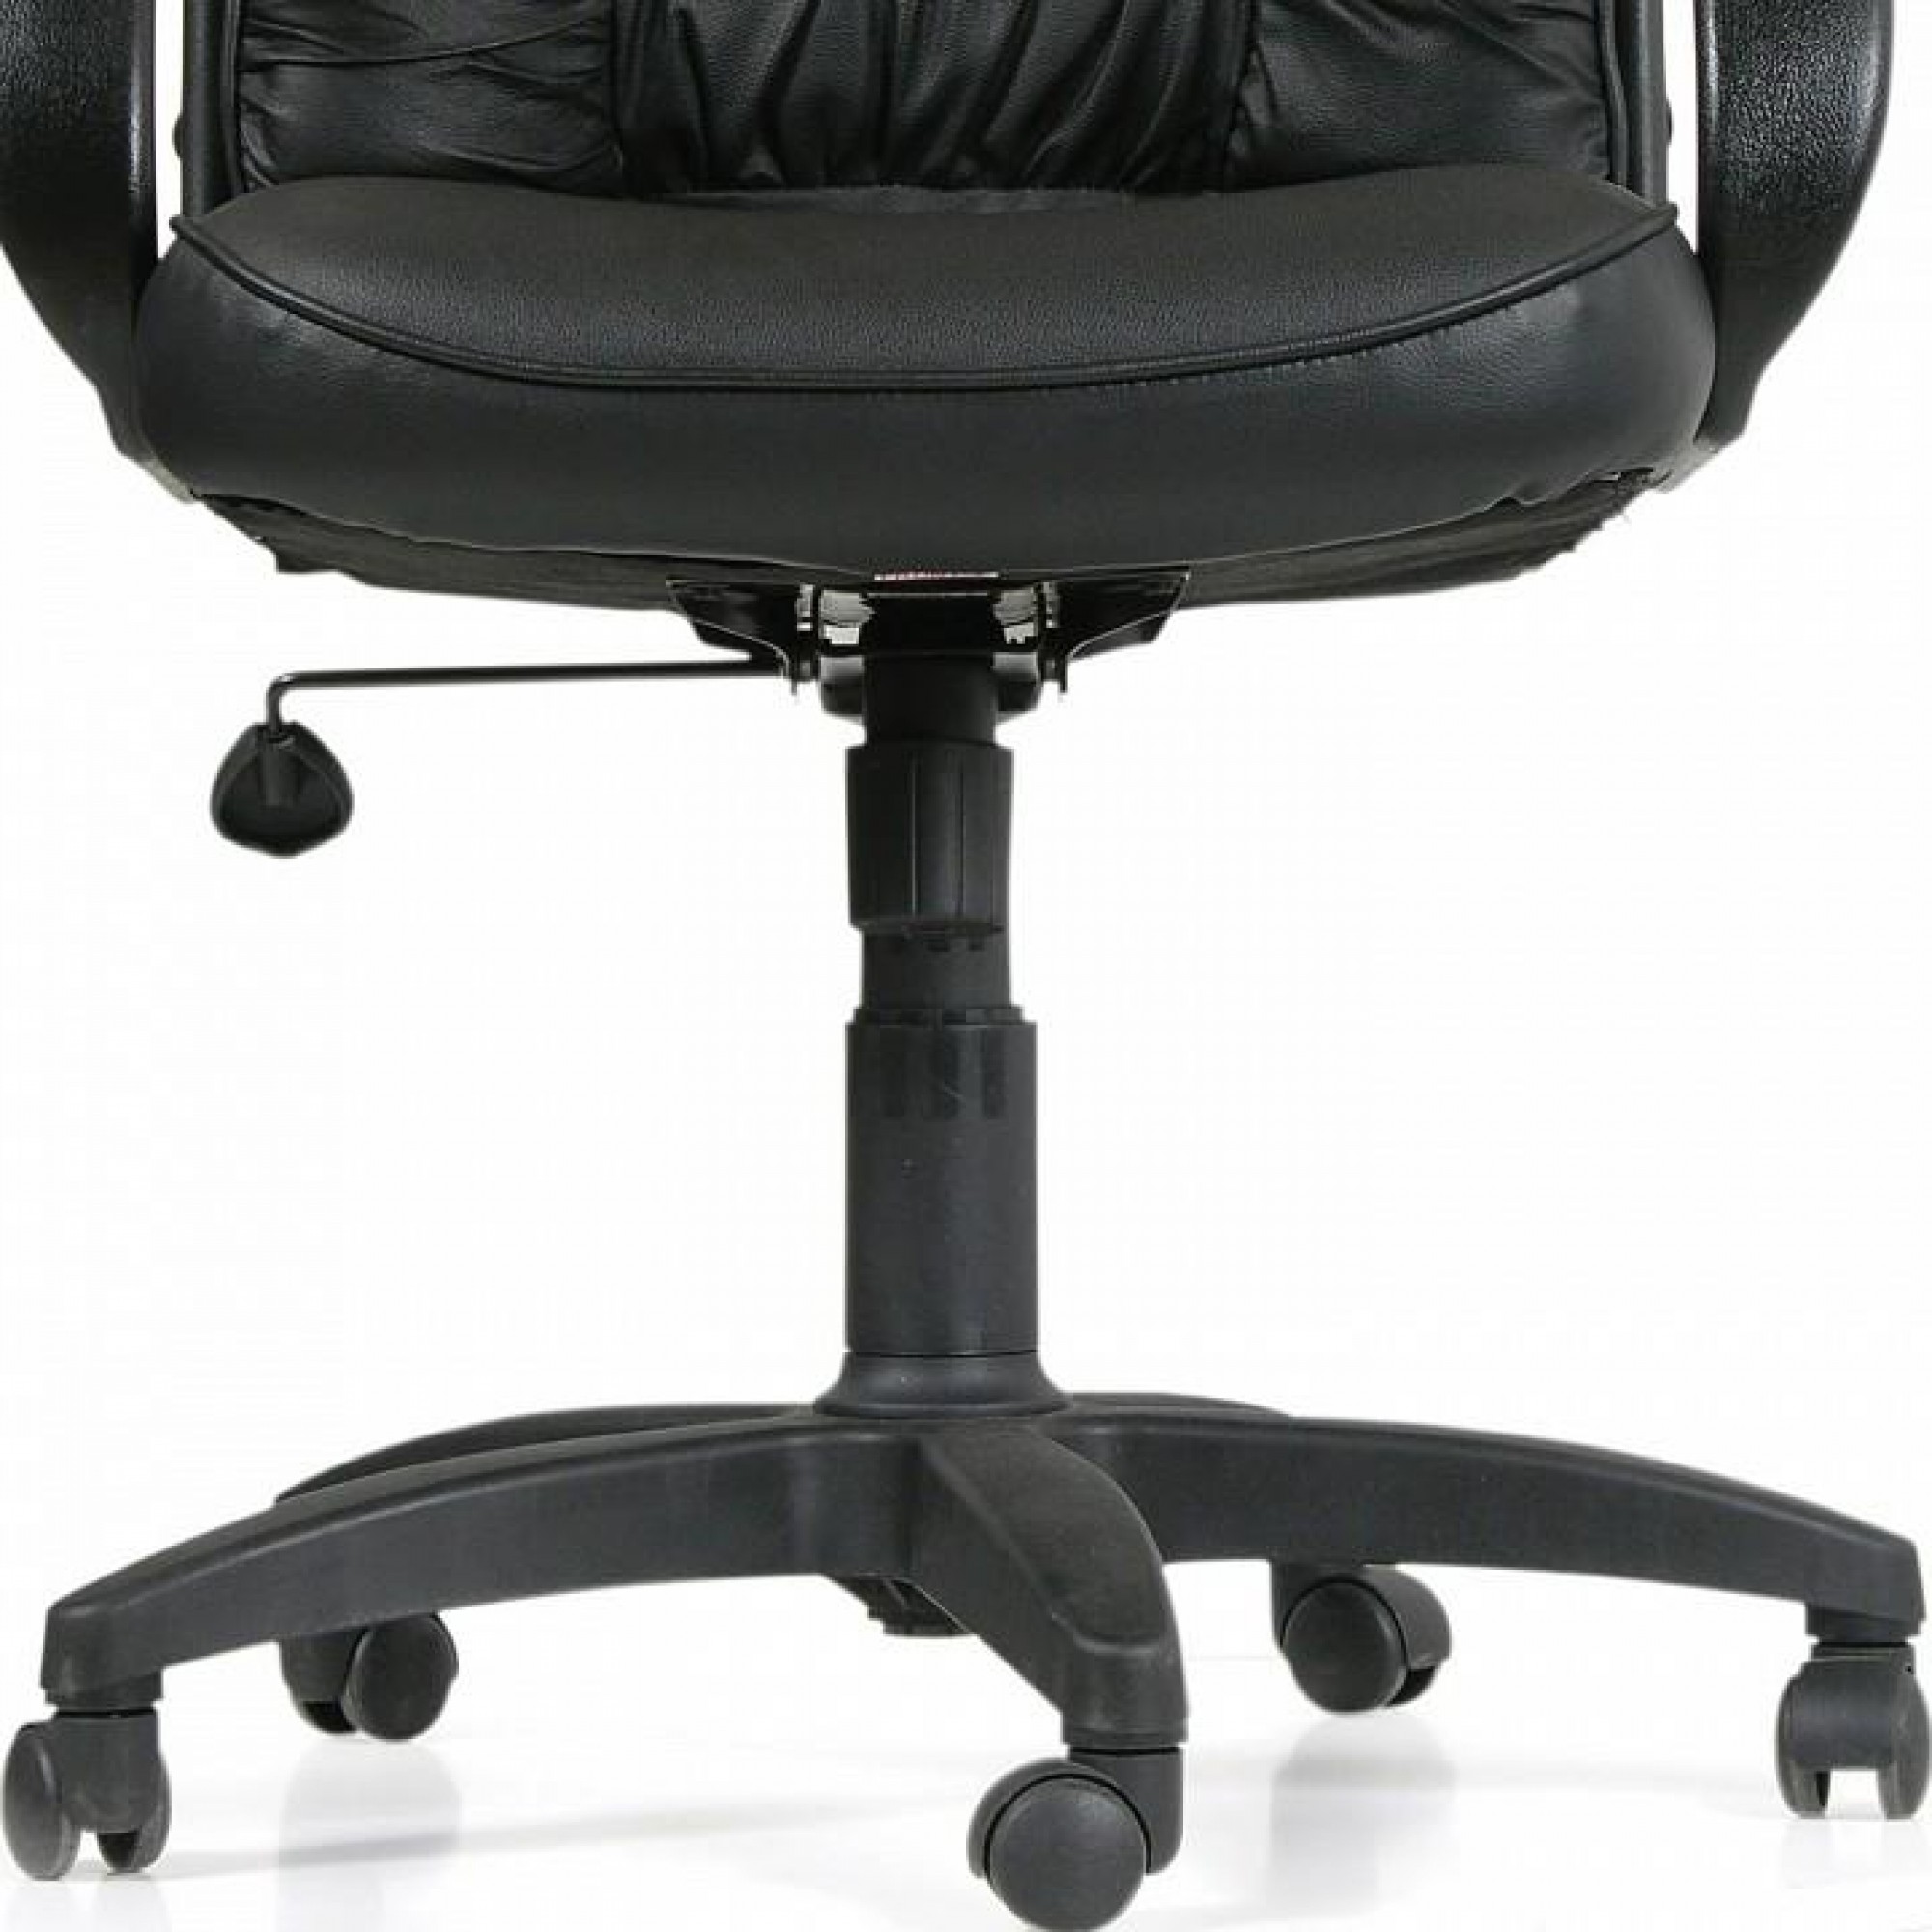 Кресло для руководителя Chairman 416 черный/черный    CHA_6025524